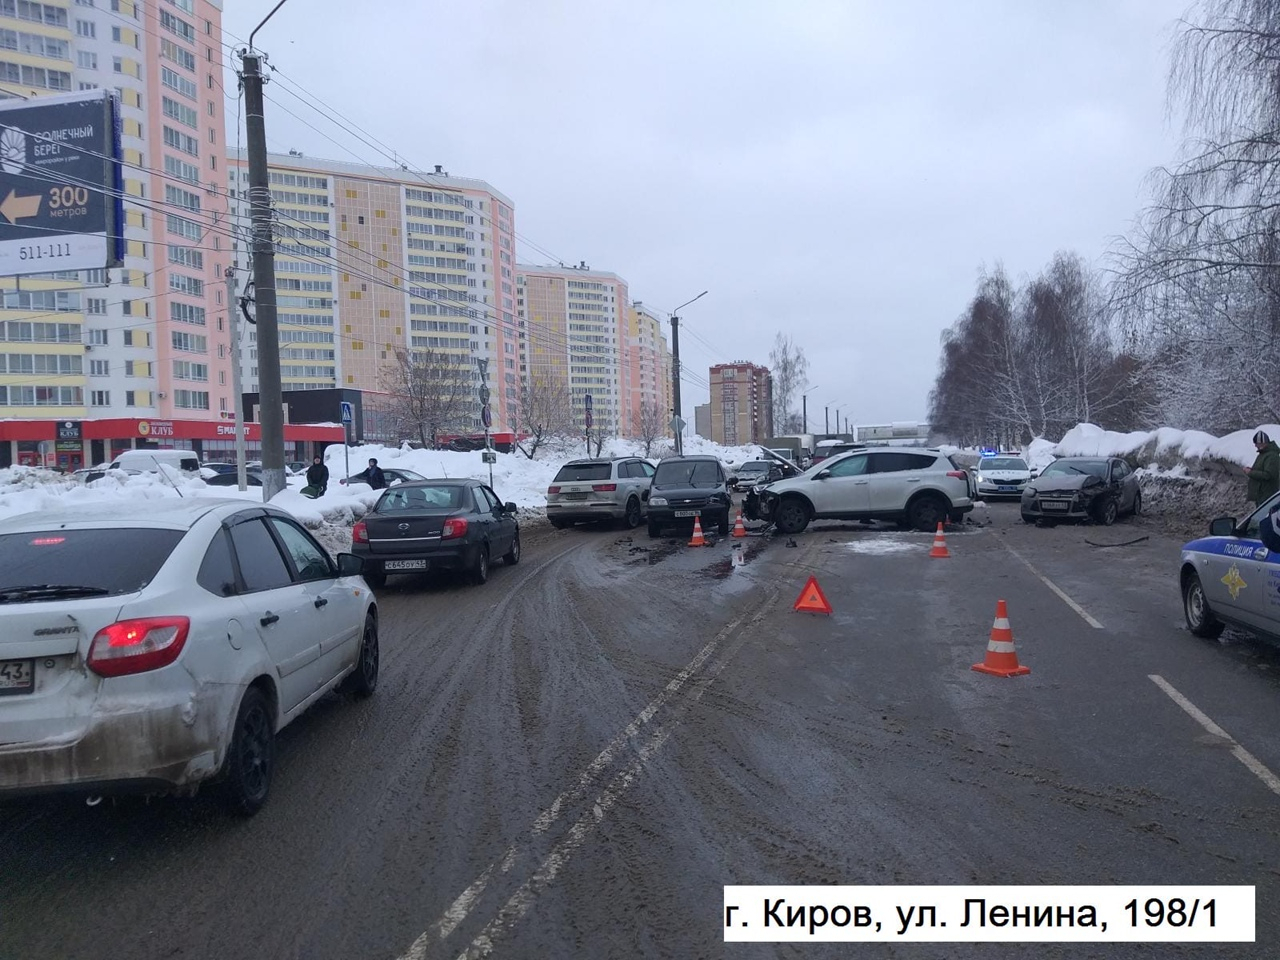 Водитель был пьян: известны подробности массового ДТП из 5 машин в Кирове